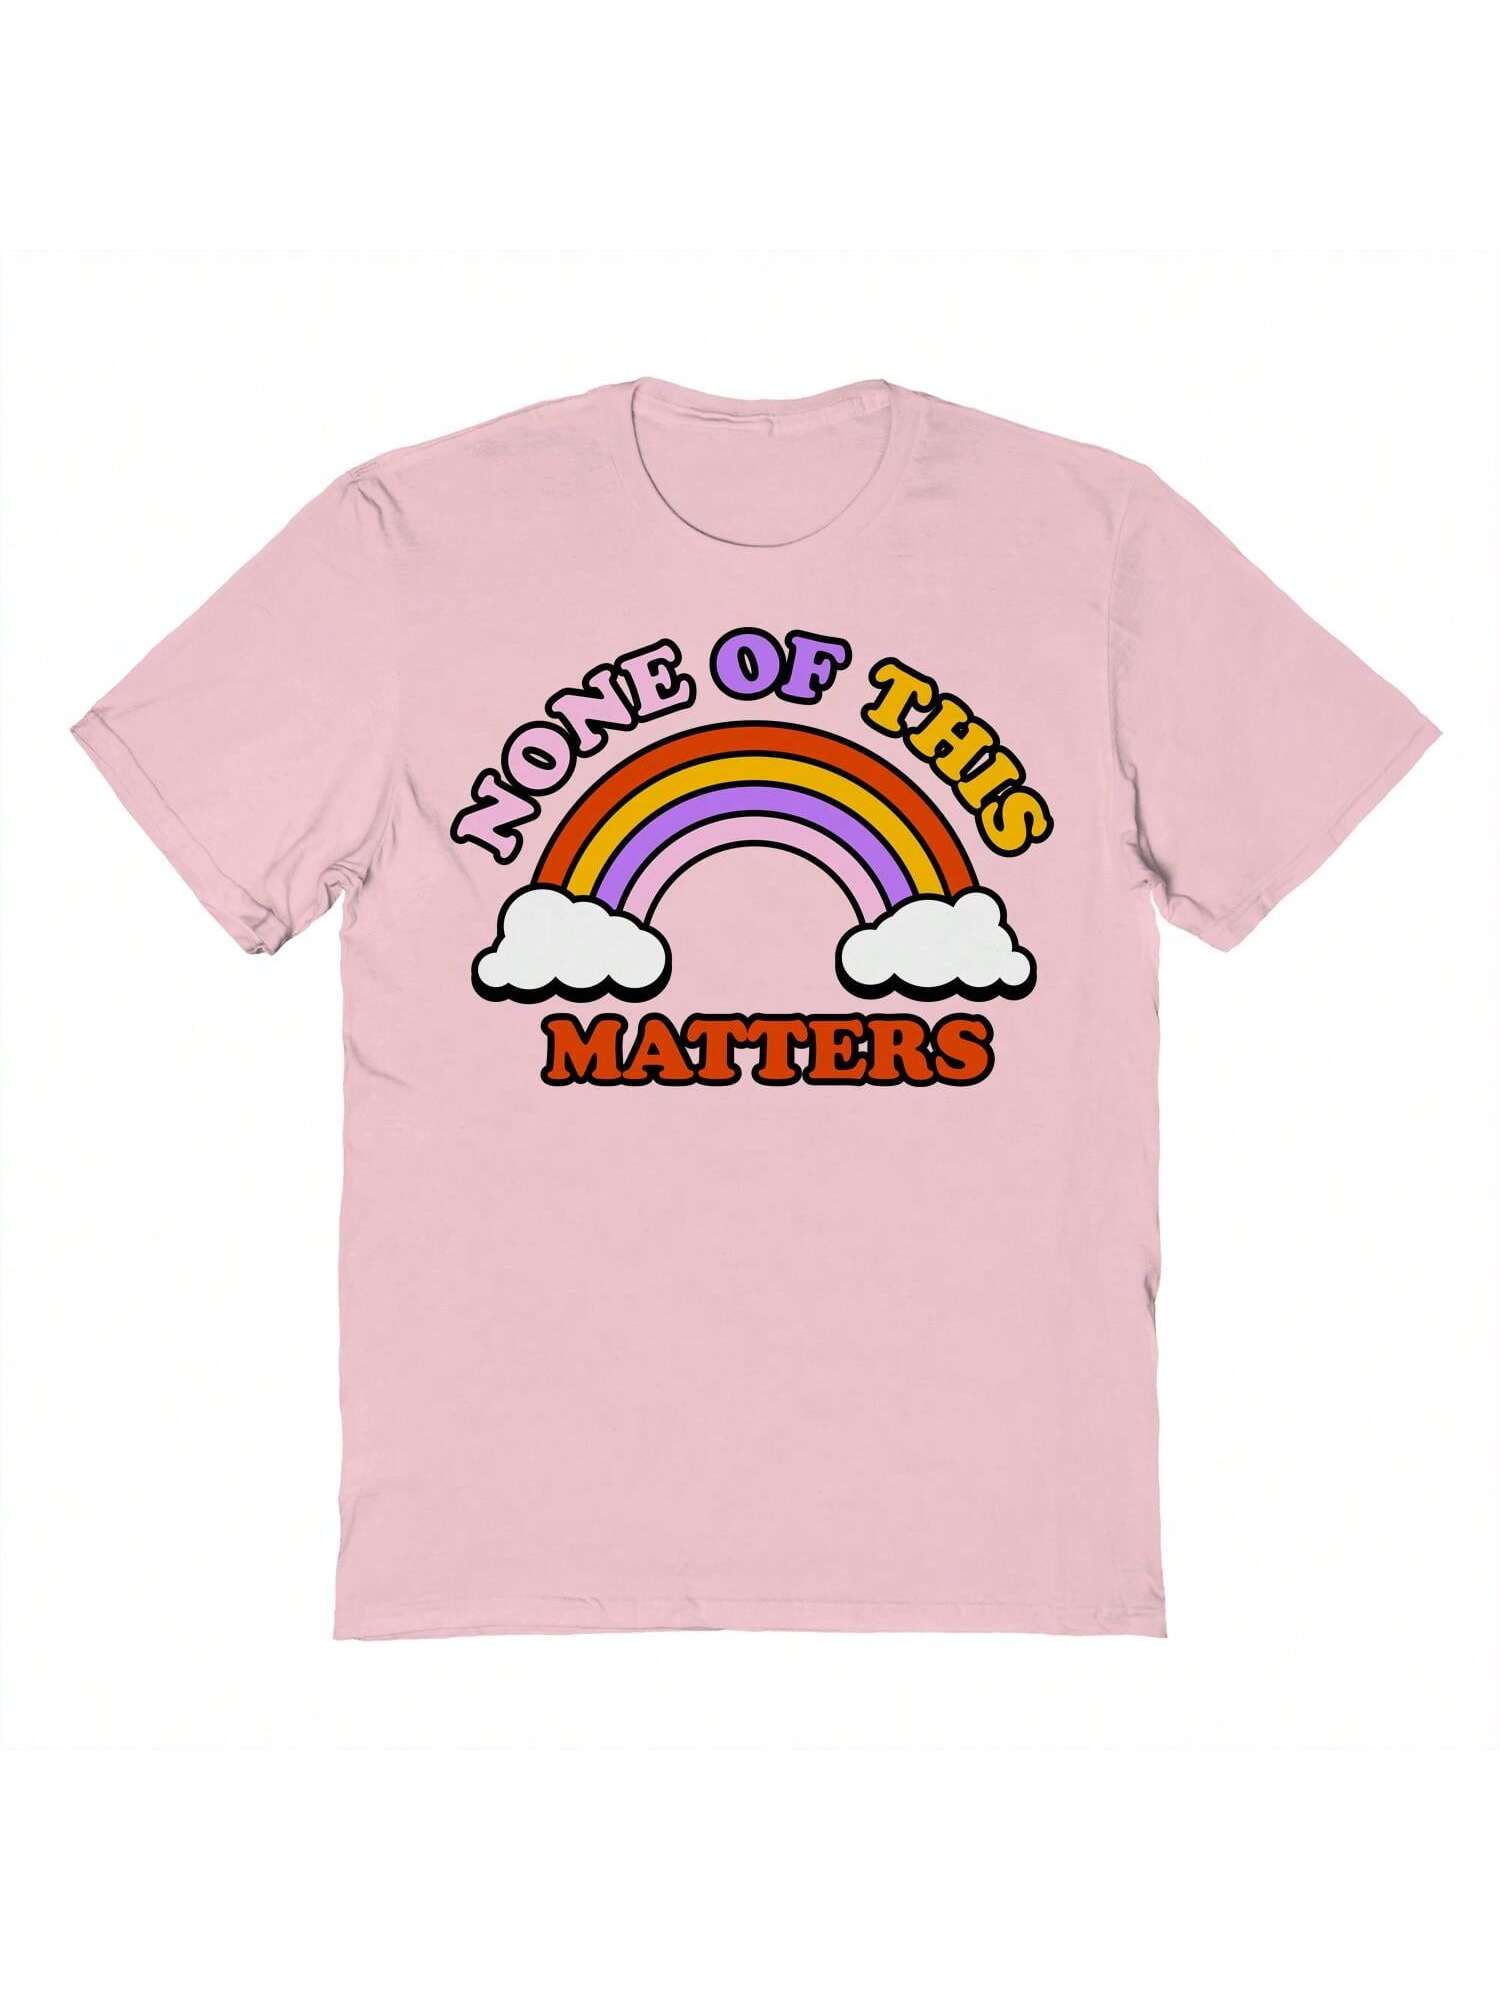 Хлопковая футболка унисекс с короткими рукавами и рисунком Pop Creature Matters, розовый